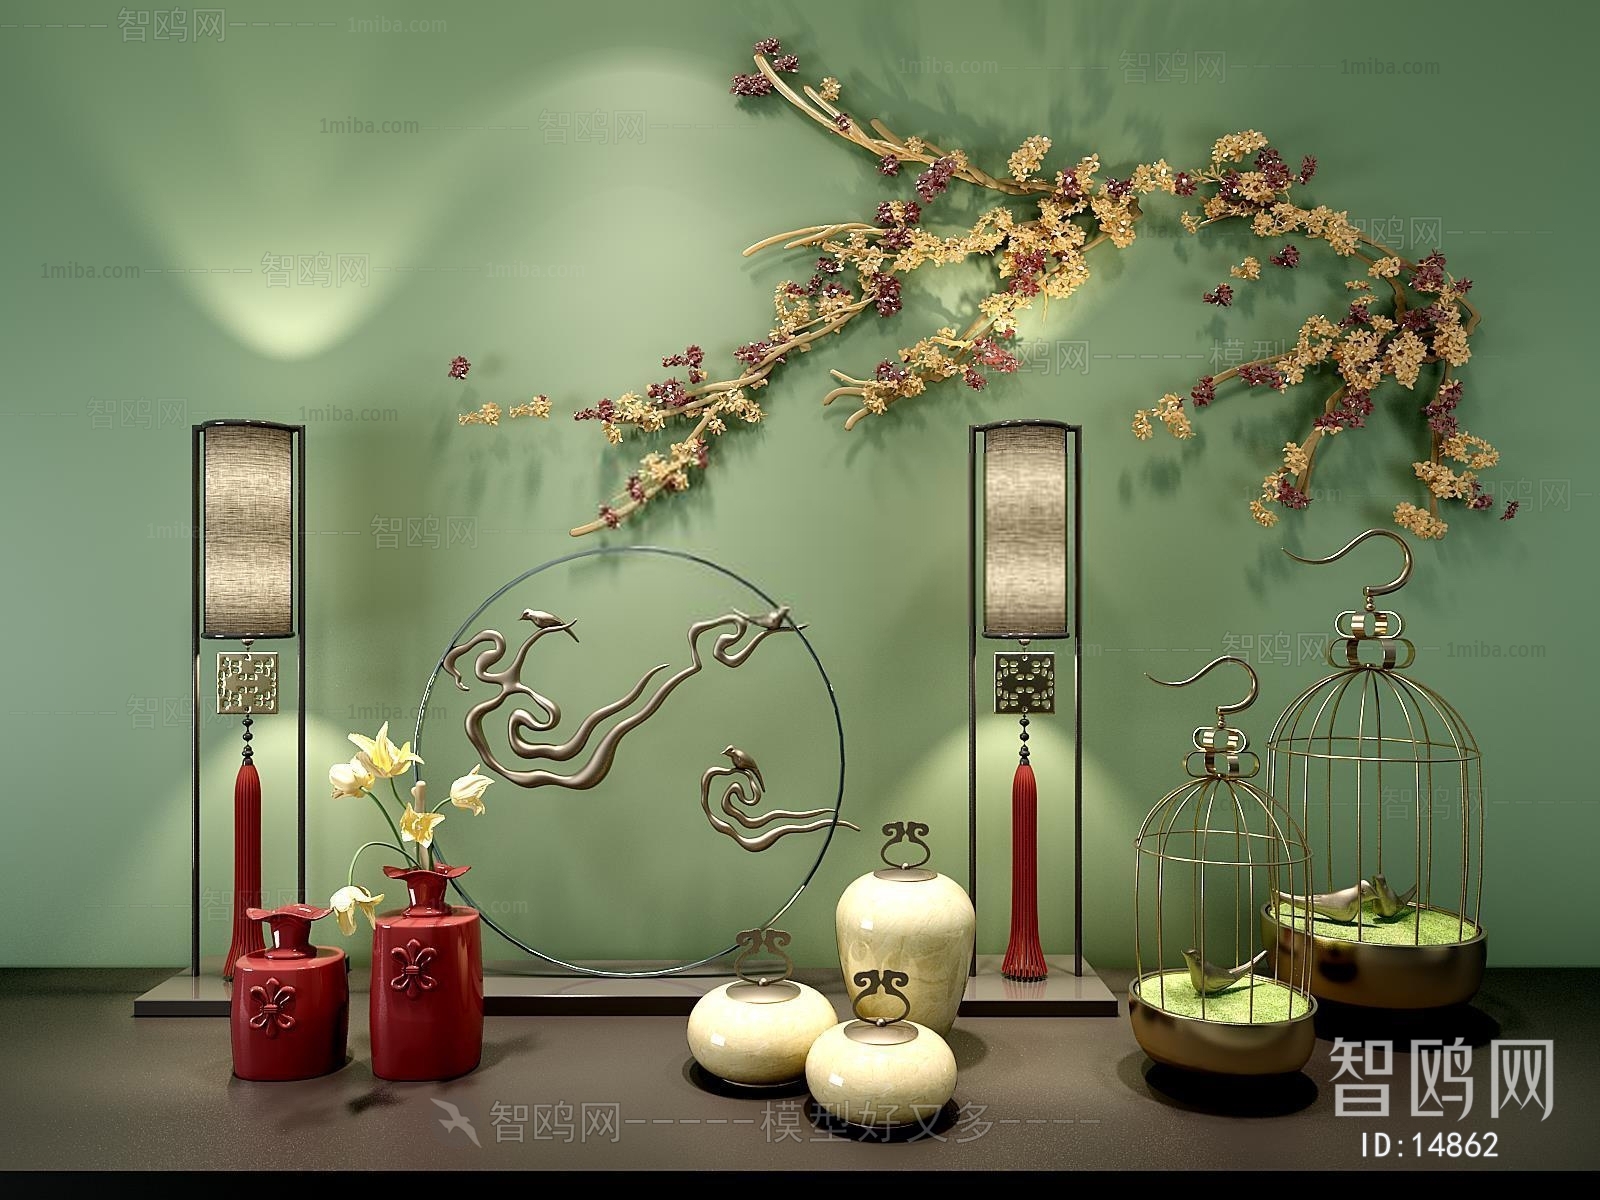 新中式墙饰器皿鸟笼摆件